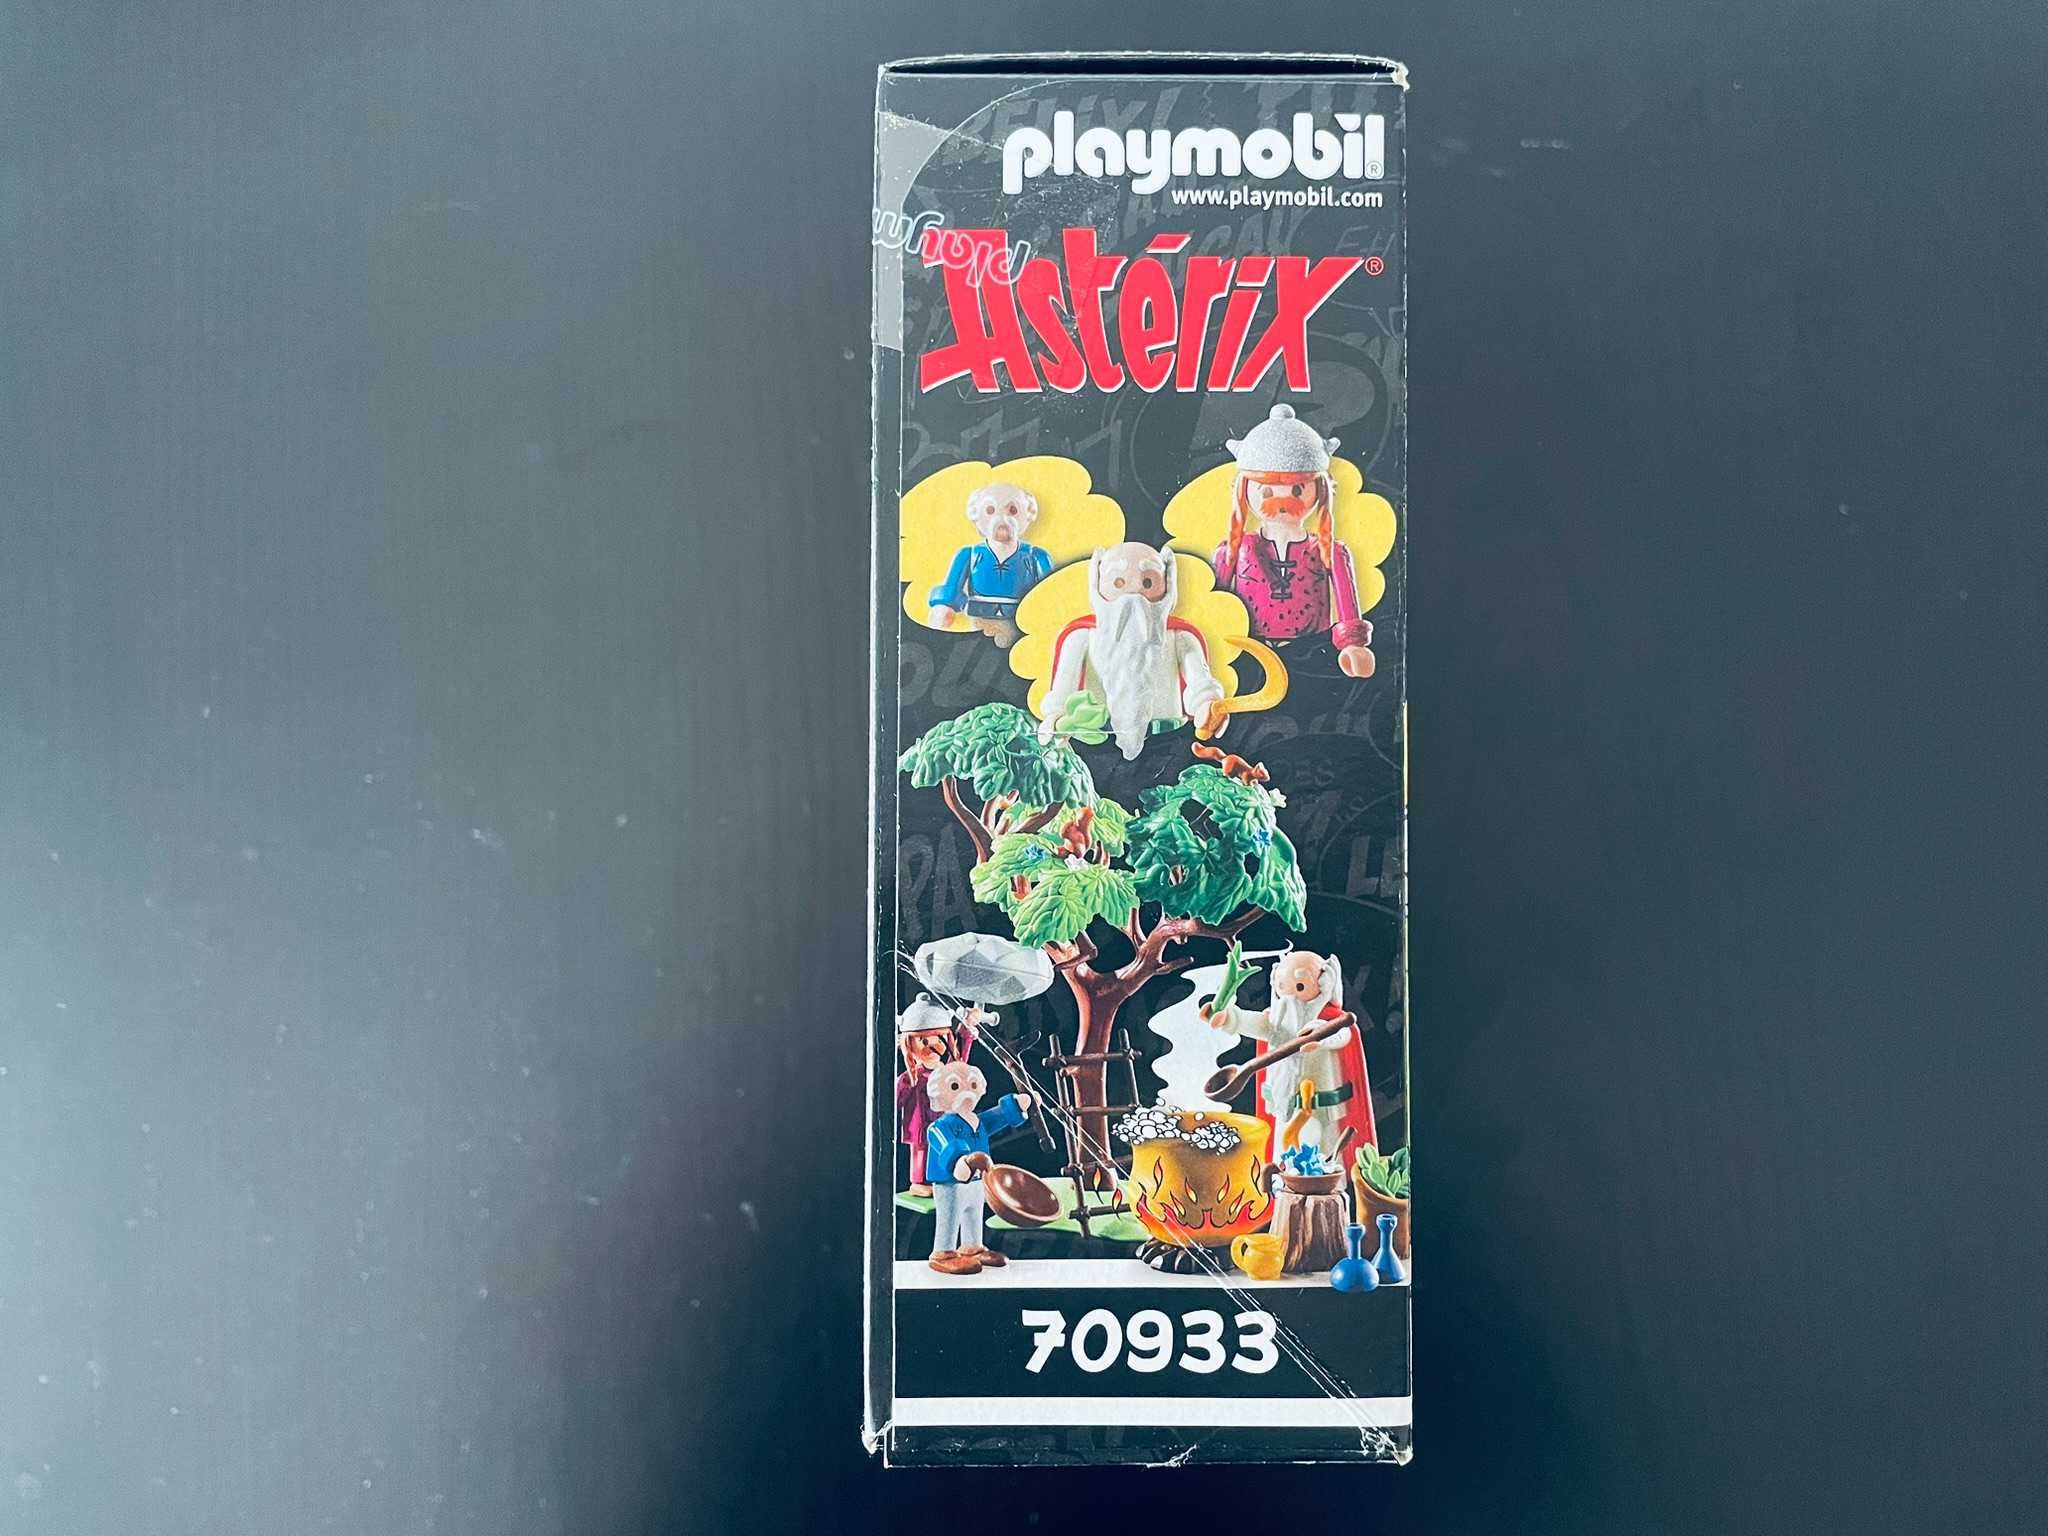 Playmobil 70933 - Asterix: Getafix com o caldeirão da Poção Mágica